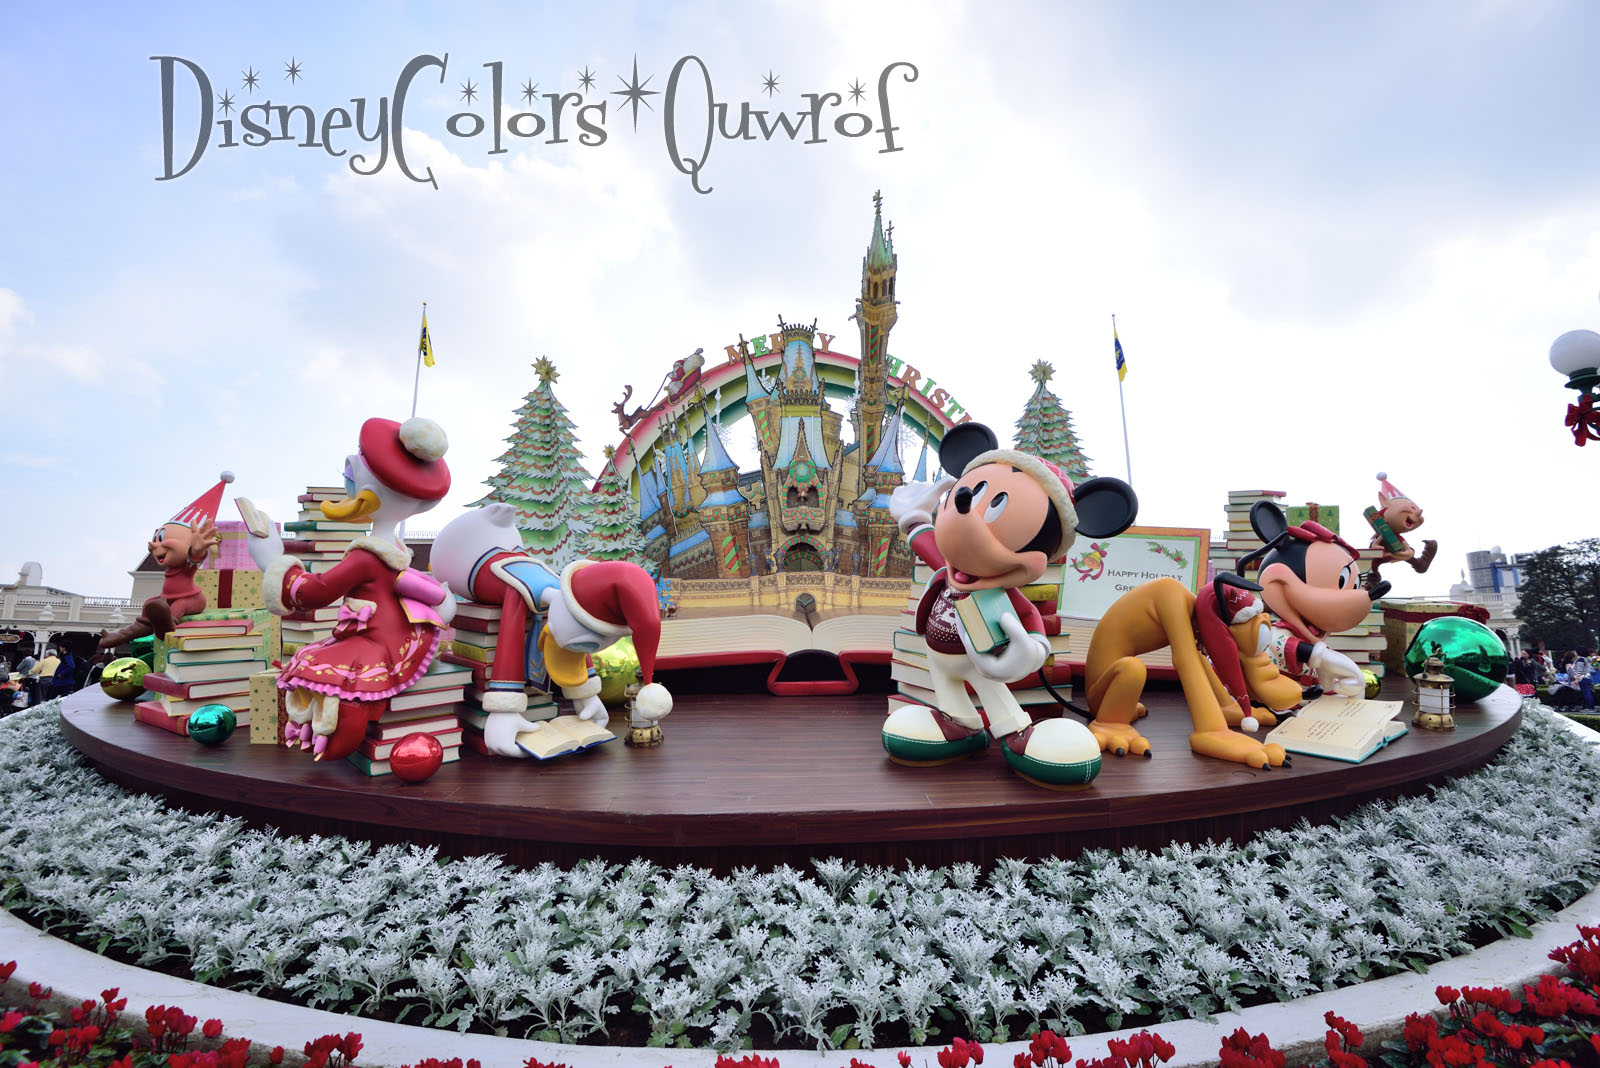 ディズニーランド クリスマス ファンタジー2015 デコレーション特集 Disney Colors Blog